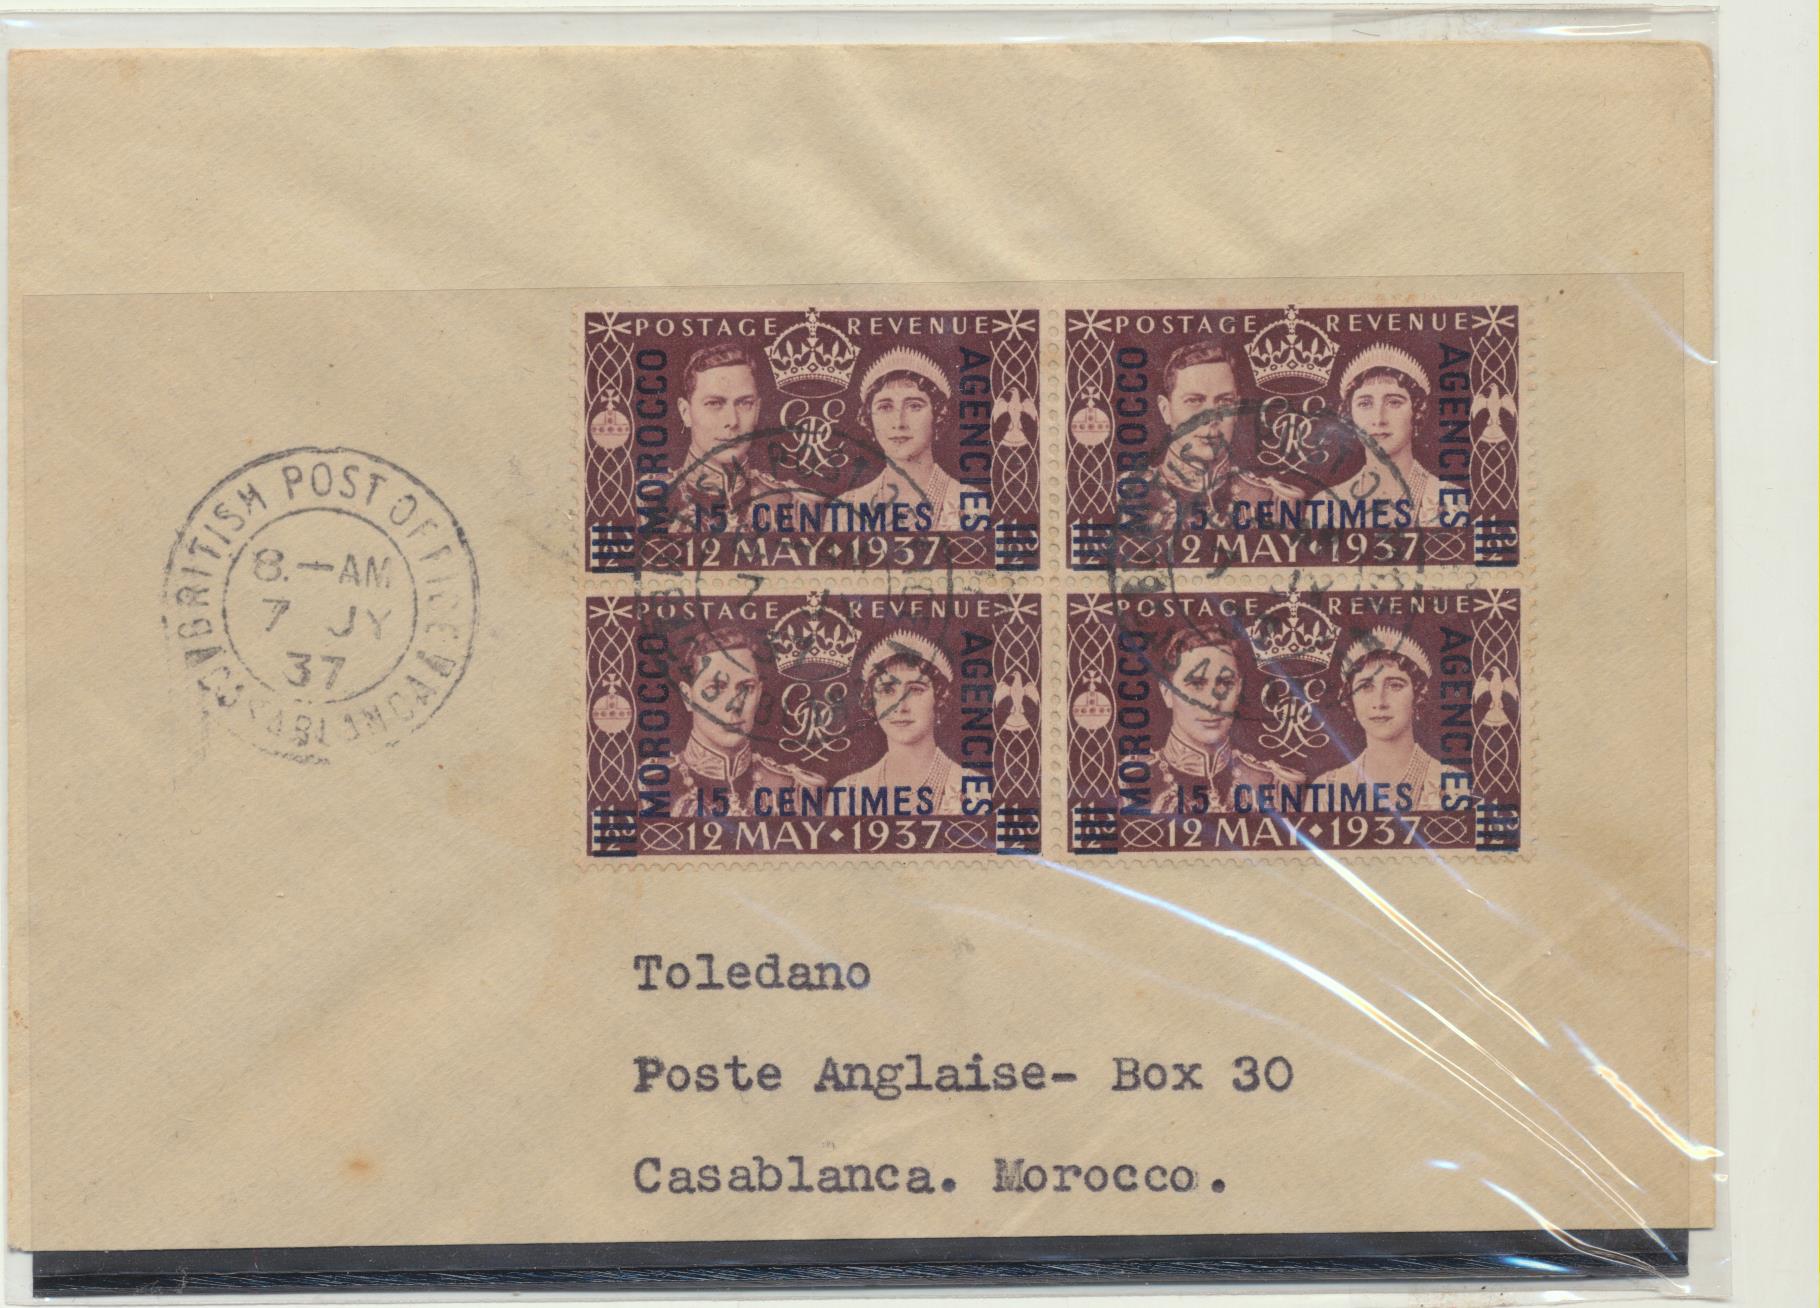 Carta a Casablanca del 7 Jy 1937. Franqueada con 4 sellos MOrocco Agencies 15 Centimes. y matasellos British Post Office-Casablanca